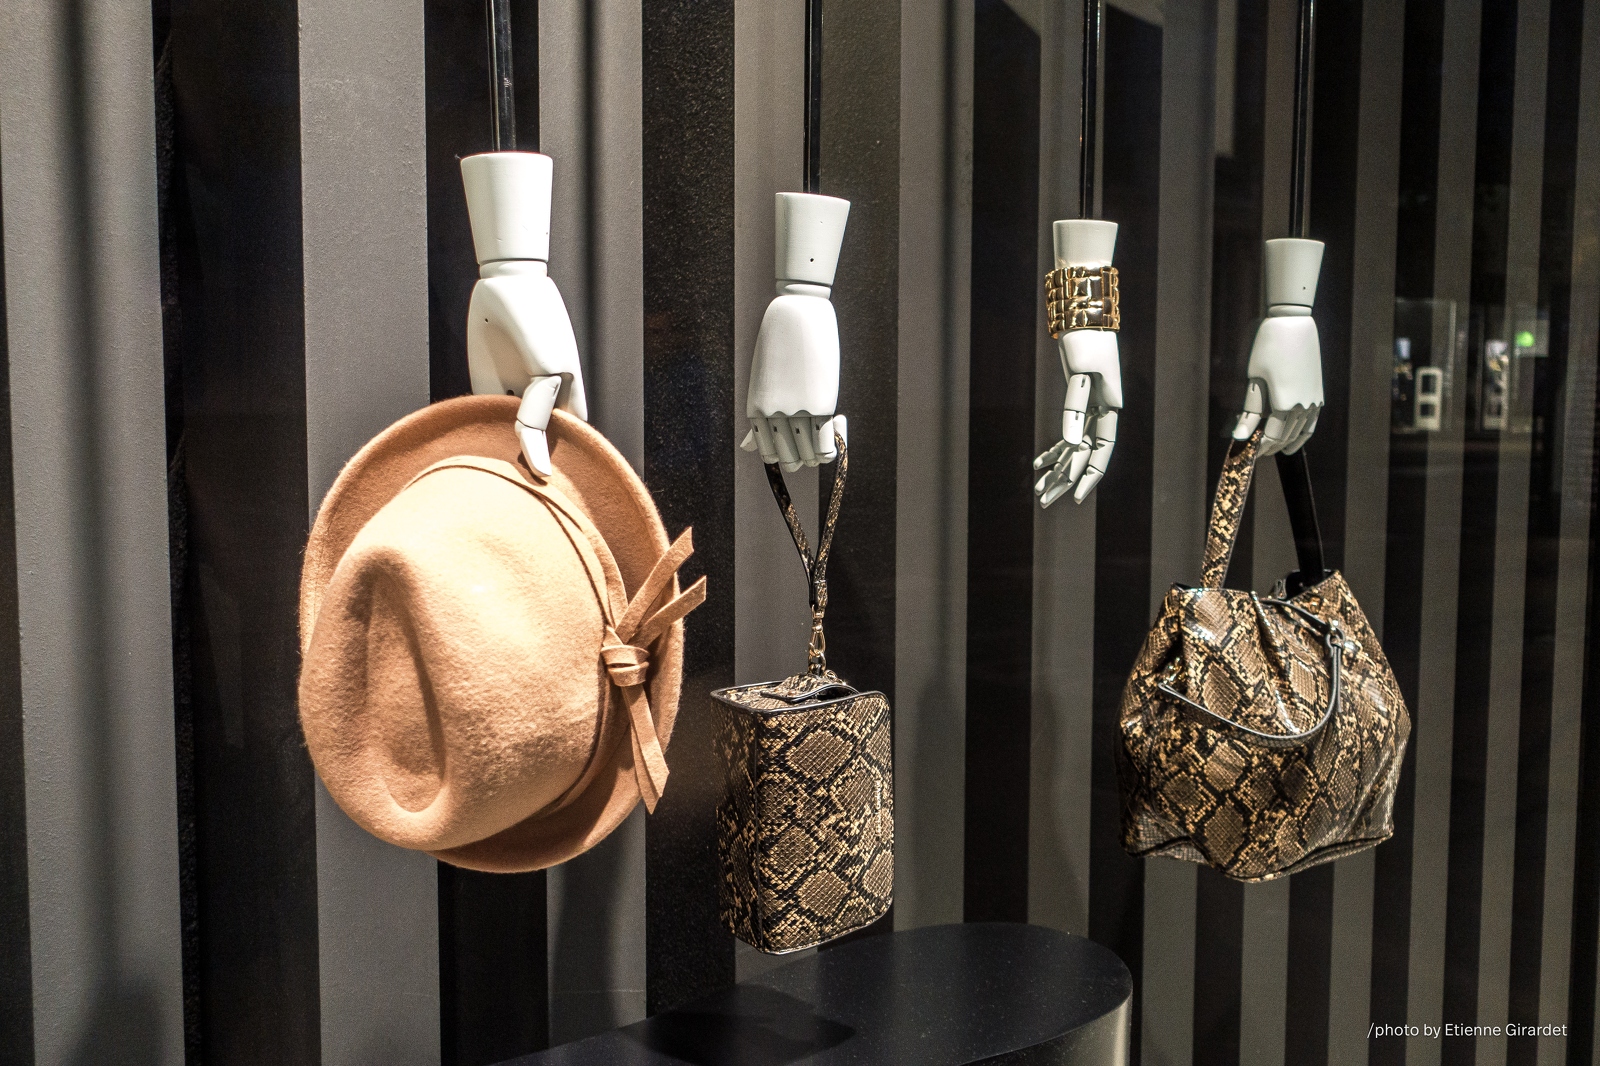 201410_24_DSC01159-shop-window-handbags-hat-by-E-Girardet.jpg